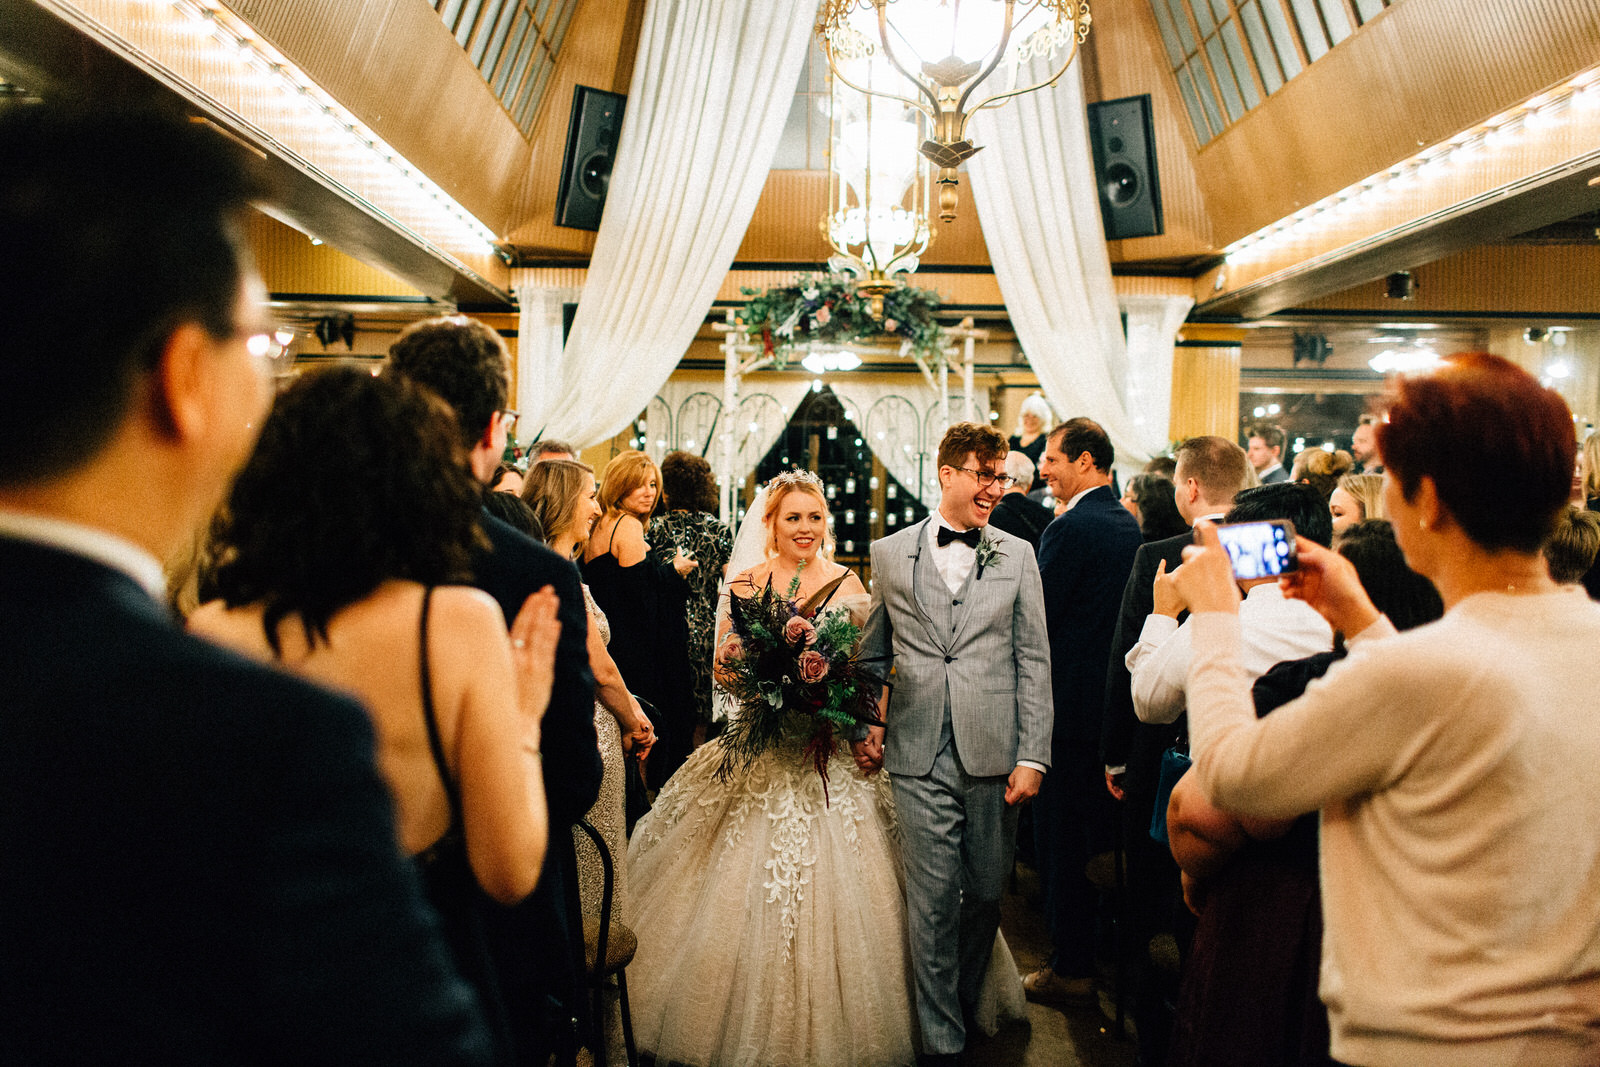 union cafe wedding seattle washington feminist photographer kendall shea night indoor ceremony reception